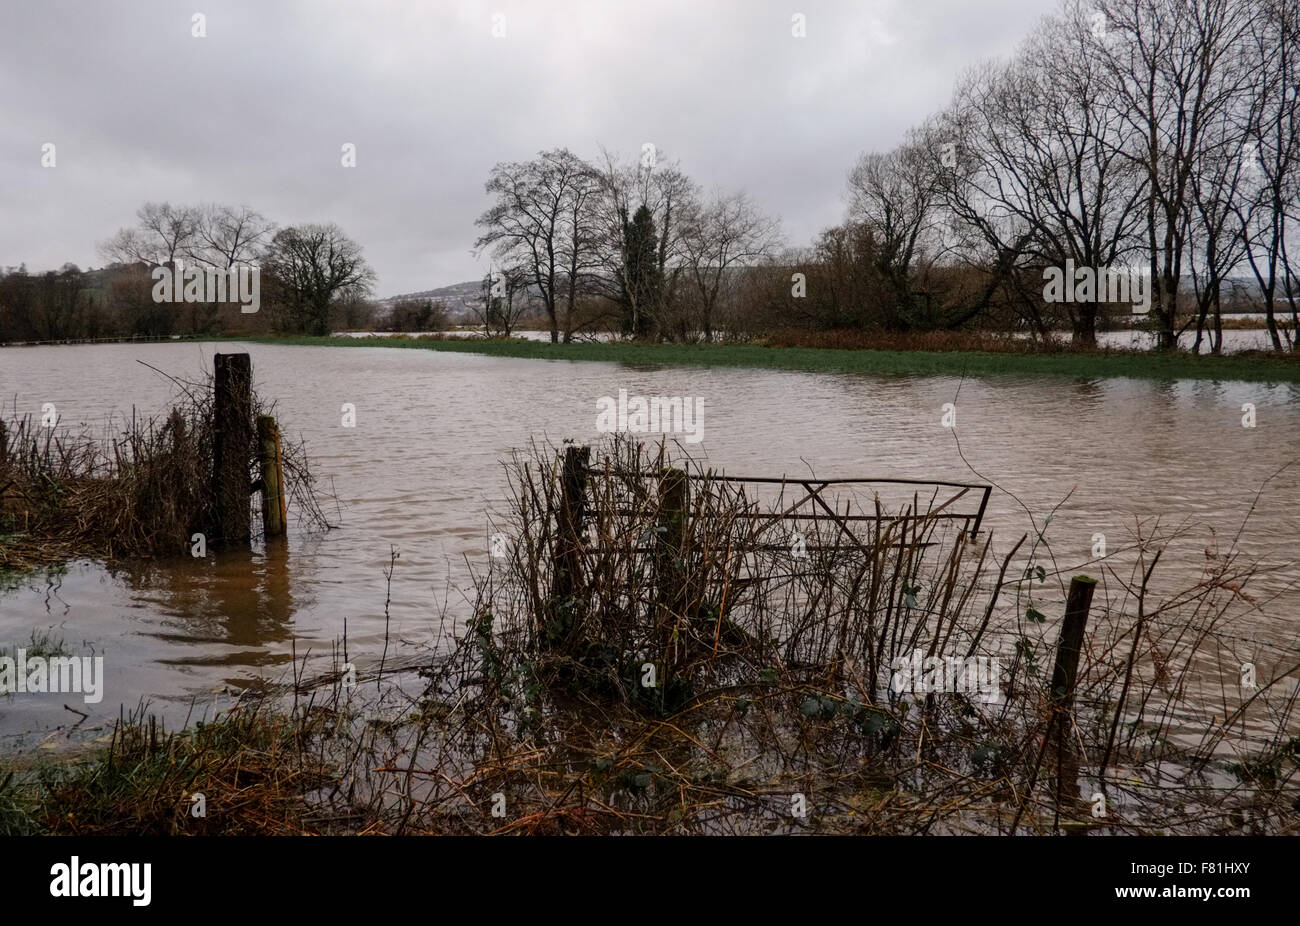 Süd-Wales, UK. 4. Dezember 2015. Längeren Regen fällt an gesättigten Land verlassen hat, tief liegende landwirtschaftliche Flächen überflutet. Der Fluss Towy platzt seine Ufer überschwemmen umliegende Farmland in der Nähe von Carmarthen, South Wales, UK. Von B4300 betrachtet. Bildnachweis: Algis Motuza/Alamy Live-Nachrichten Stockfoto